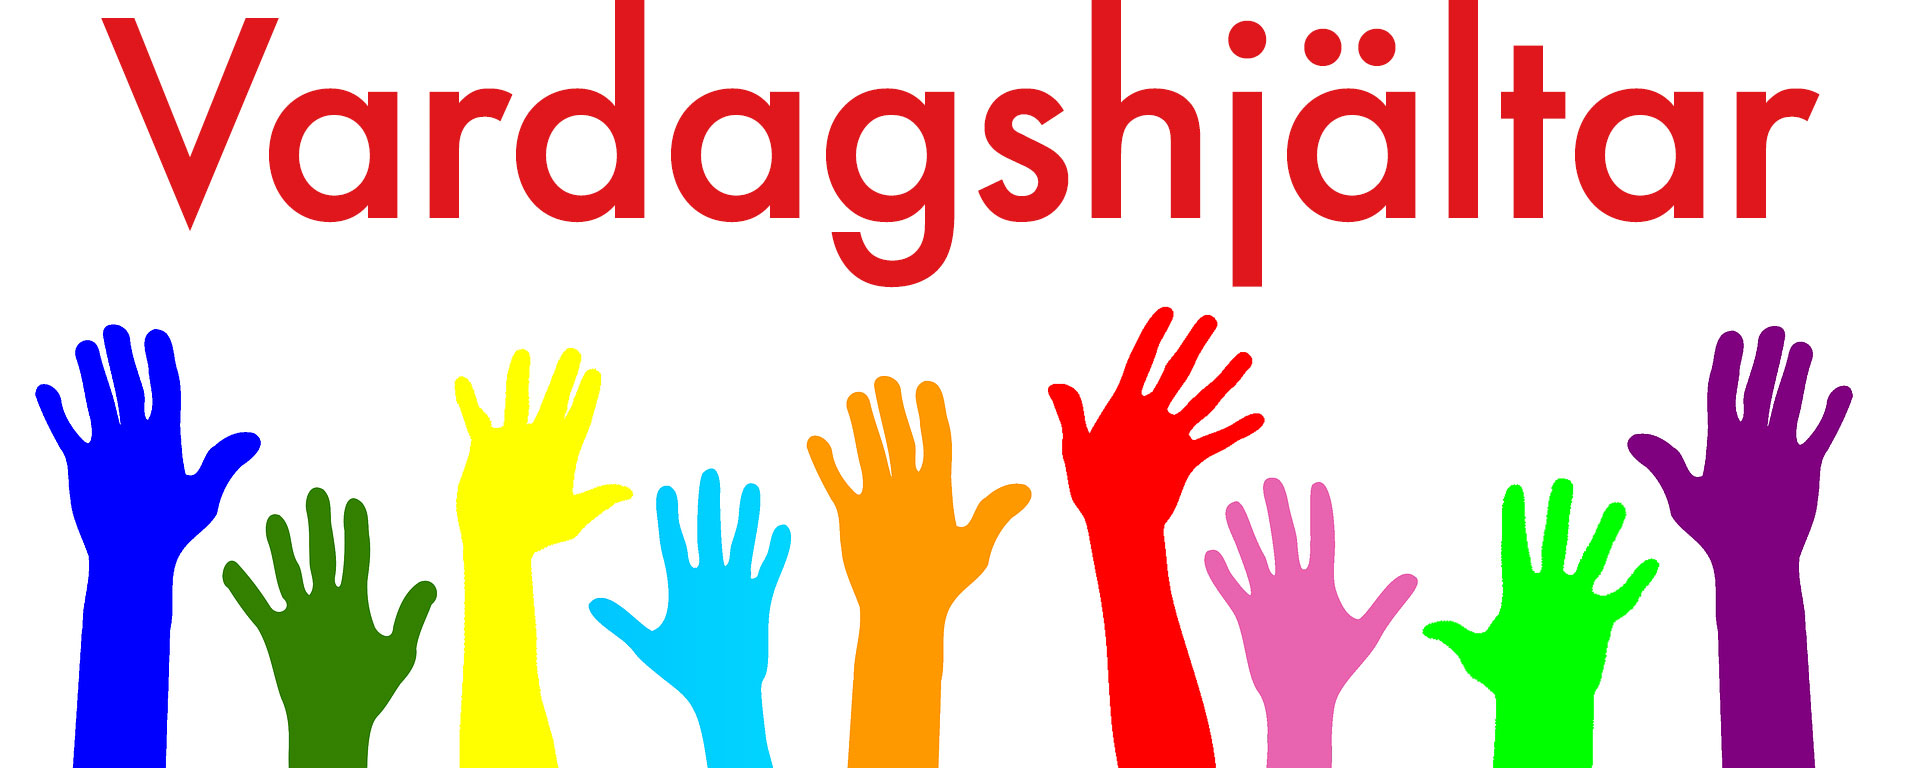 En logo för vår kampanj Vardagshjältar. Olika färgers händer som hjälper till och texten Vardasghjältar.